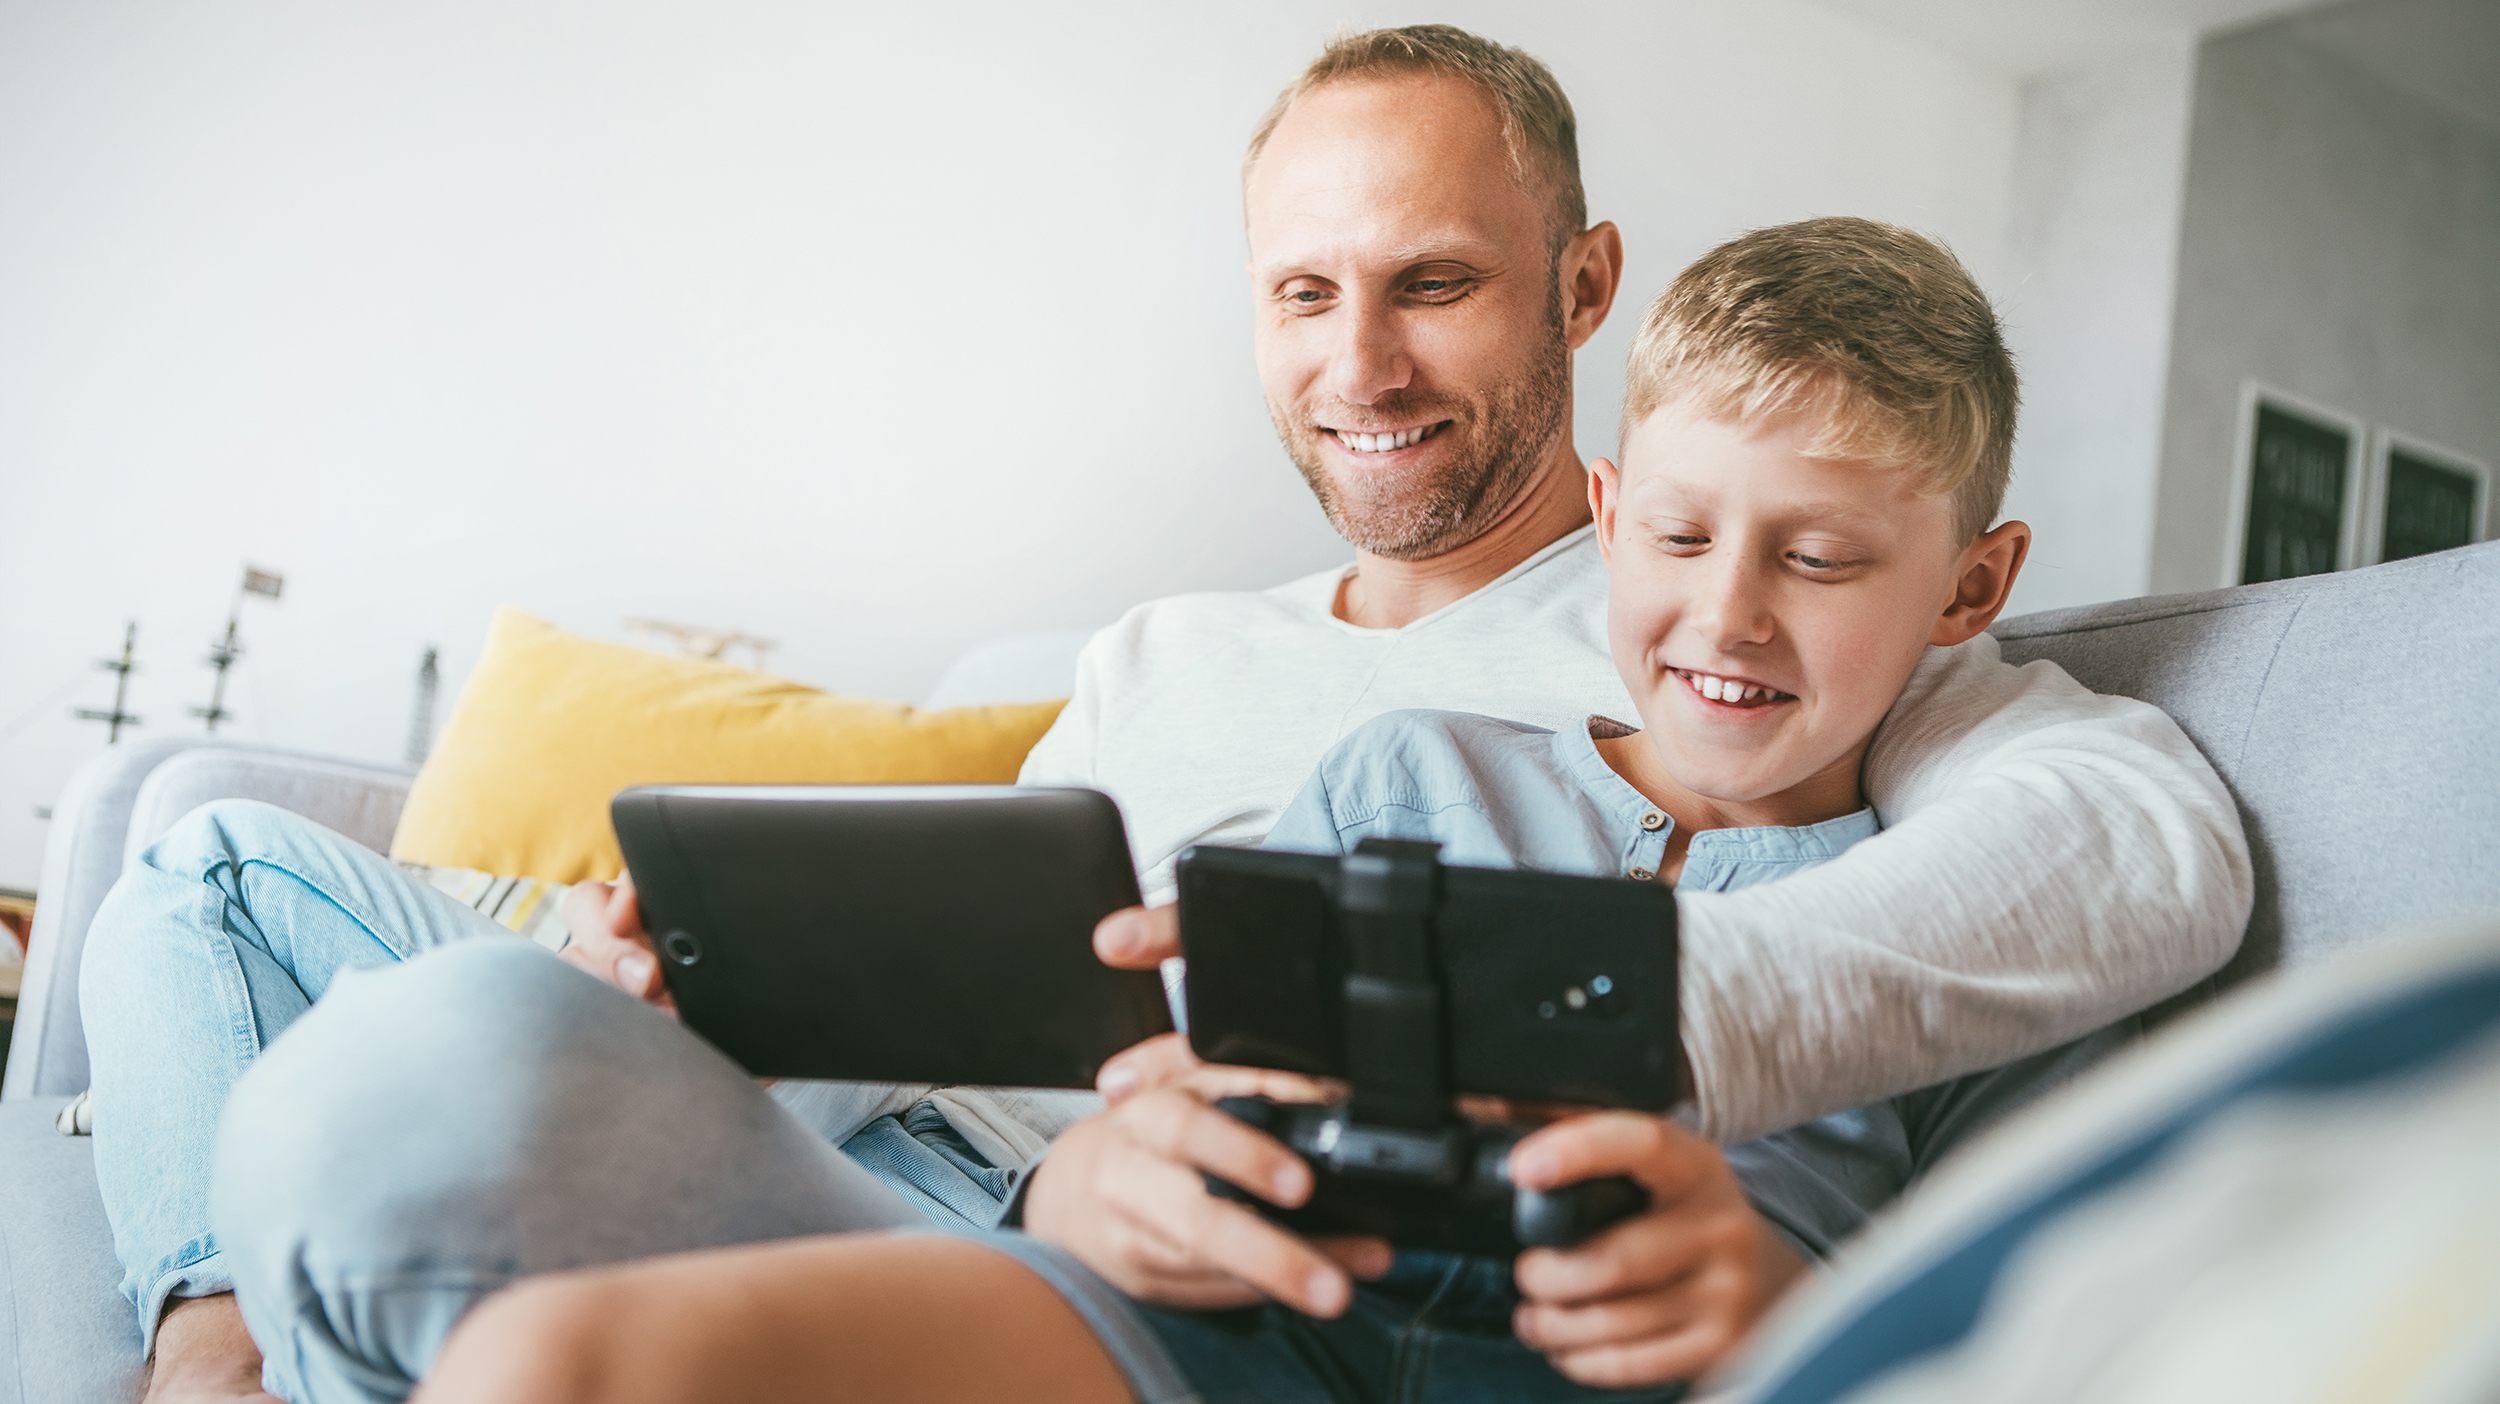 Dad likes playing. Папа играет в телефон. Папа играет с сыном. Отец и сын сидят перед телевизором. Отец играет с сыном геймпад.